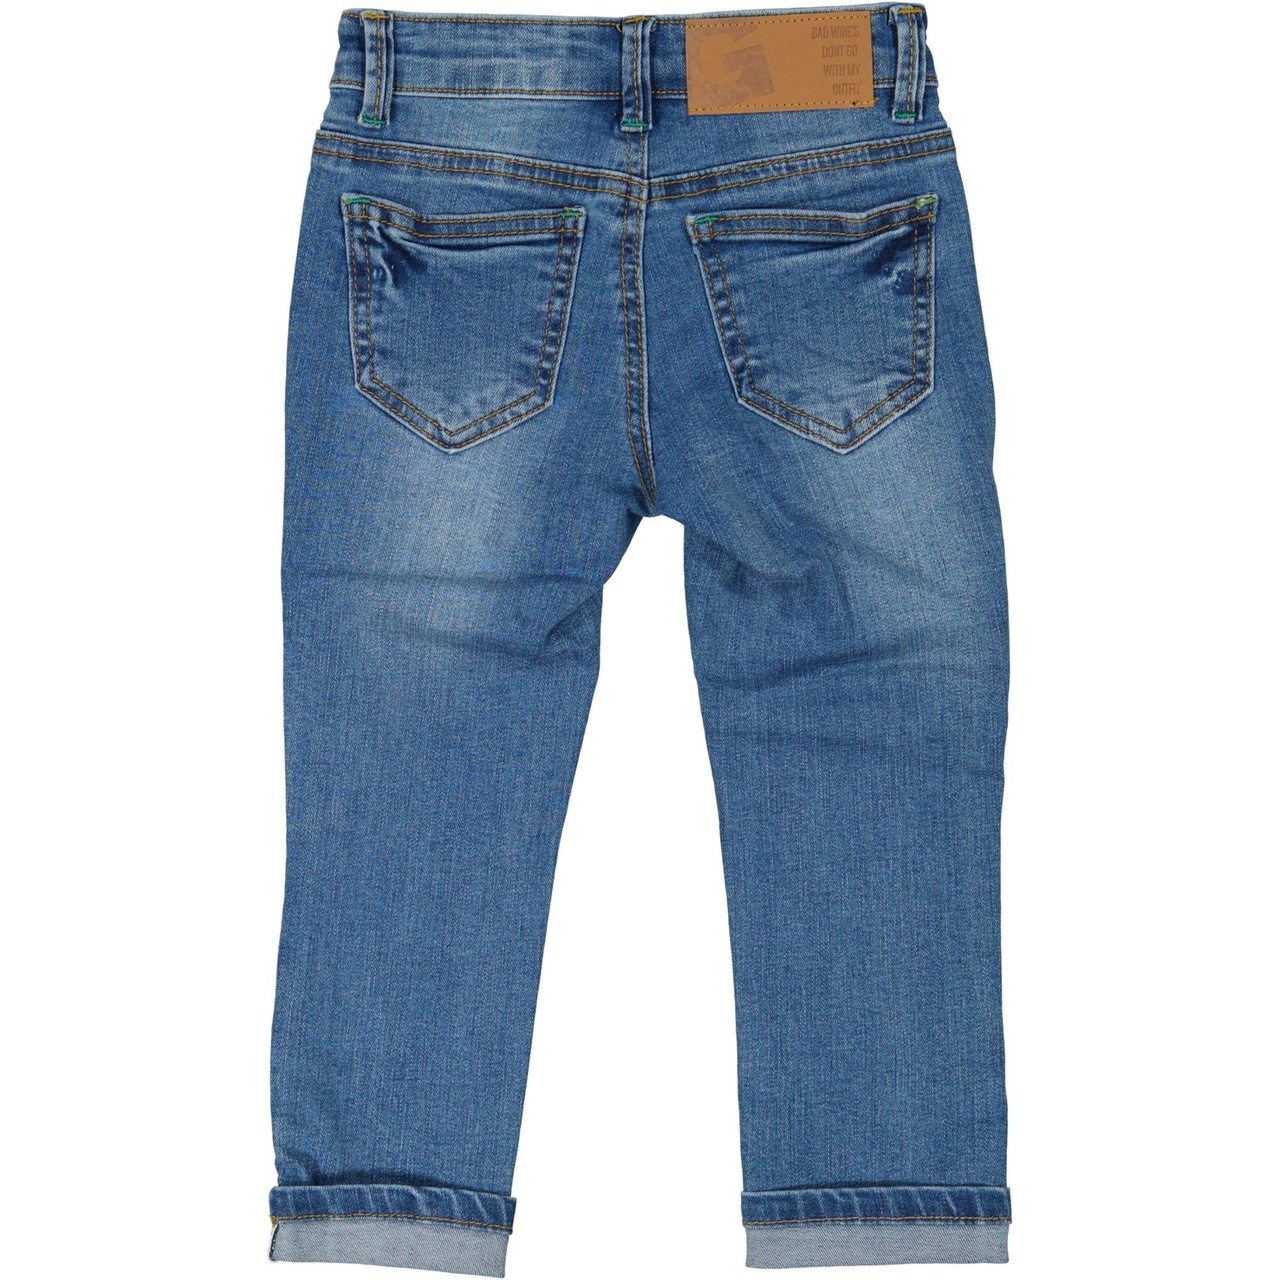 Unisex 5-pocket jeans Denim blue wash 98/104